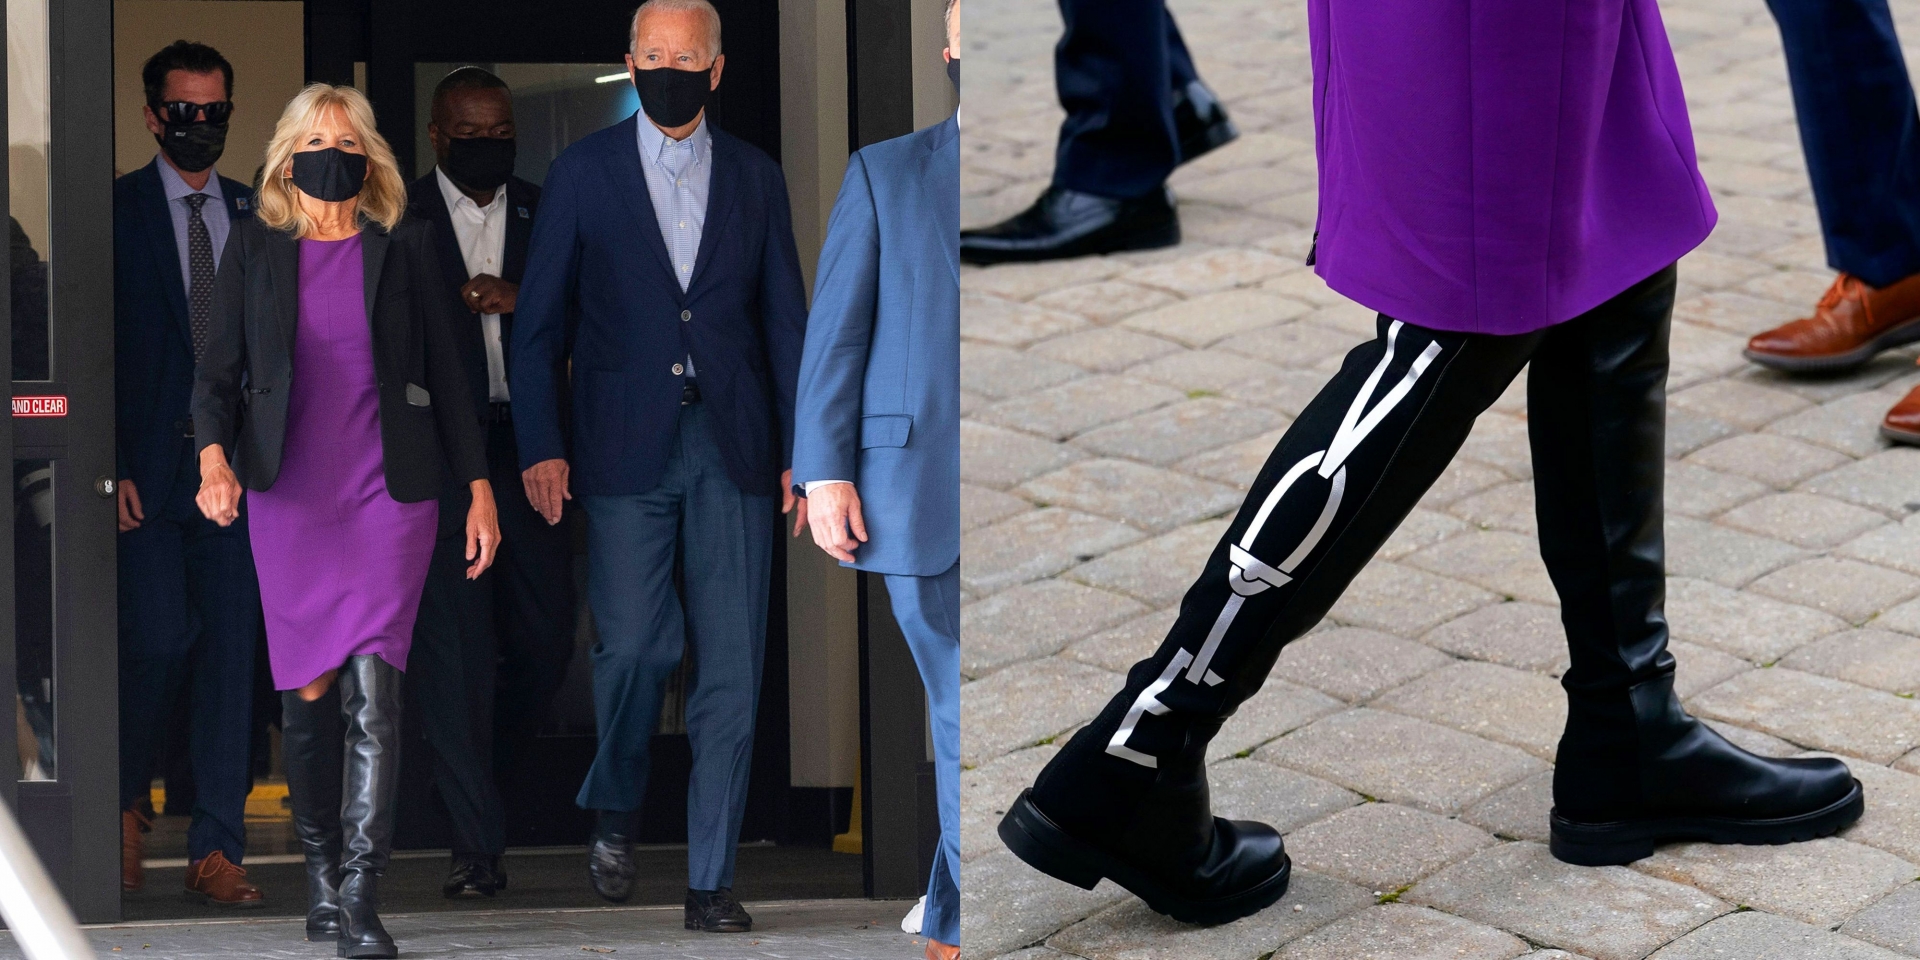 Trong chiến dịch tranh cử tổng thống, phu nhân từng gây ấn tượng với chiếc dầm màu tím, mang boots cổ cao có dòng chữ 'VOTE' đến từ thương hiệu Stuart Weitzman có giá 695 USD.